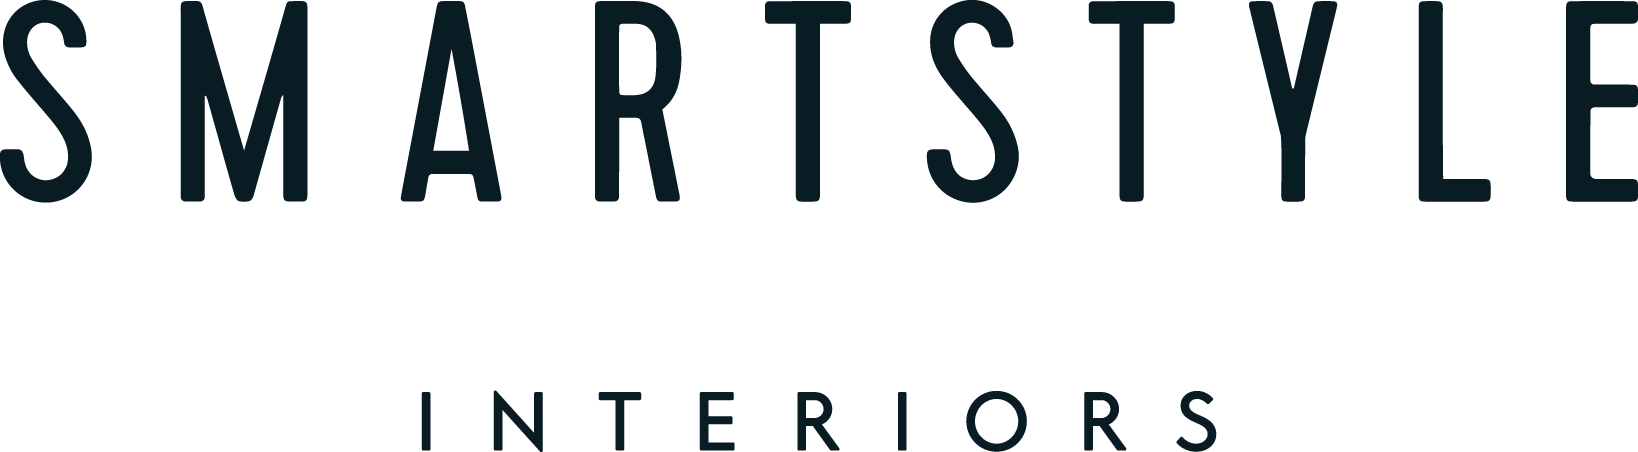 Smartstyle Interiors logo